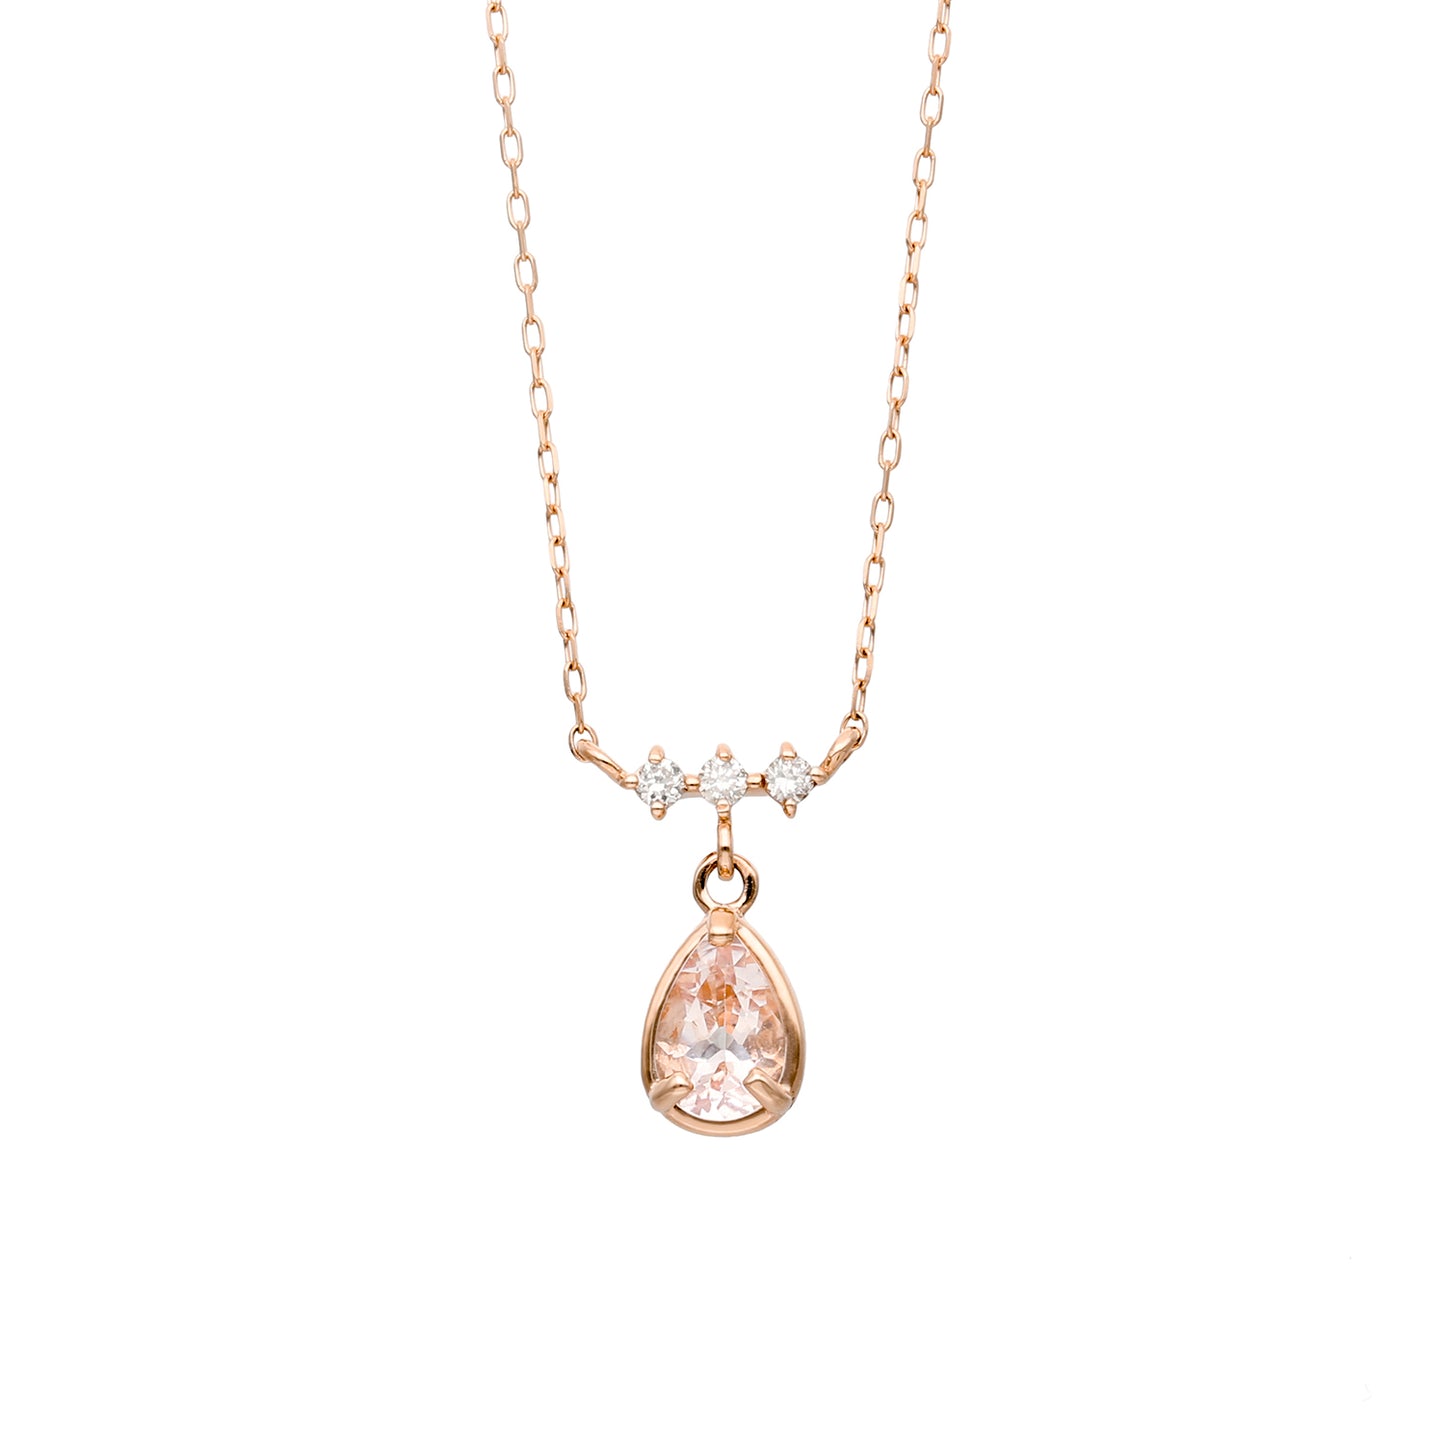 10 Karat Pink Gold Morganite Necklace｜60-9408